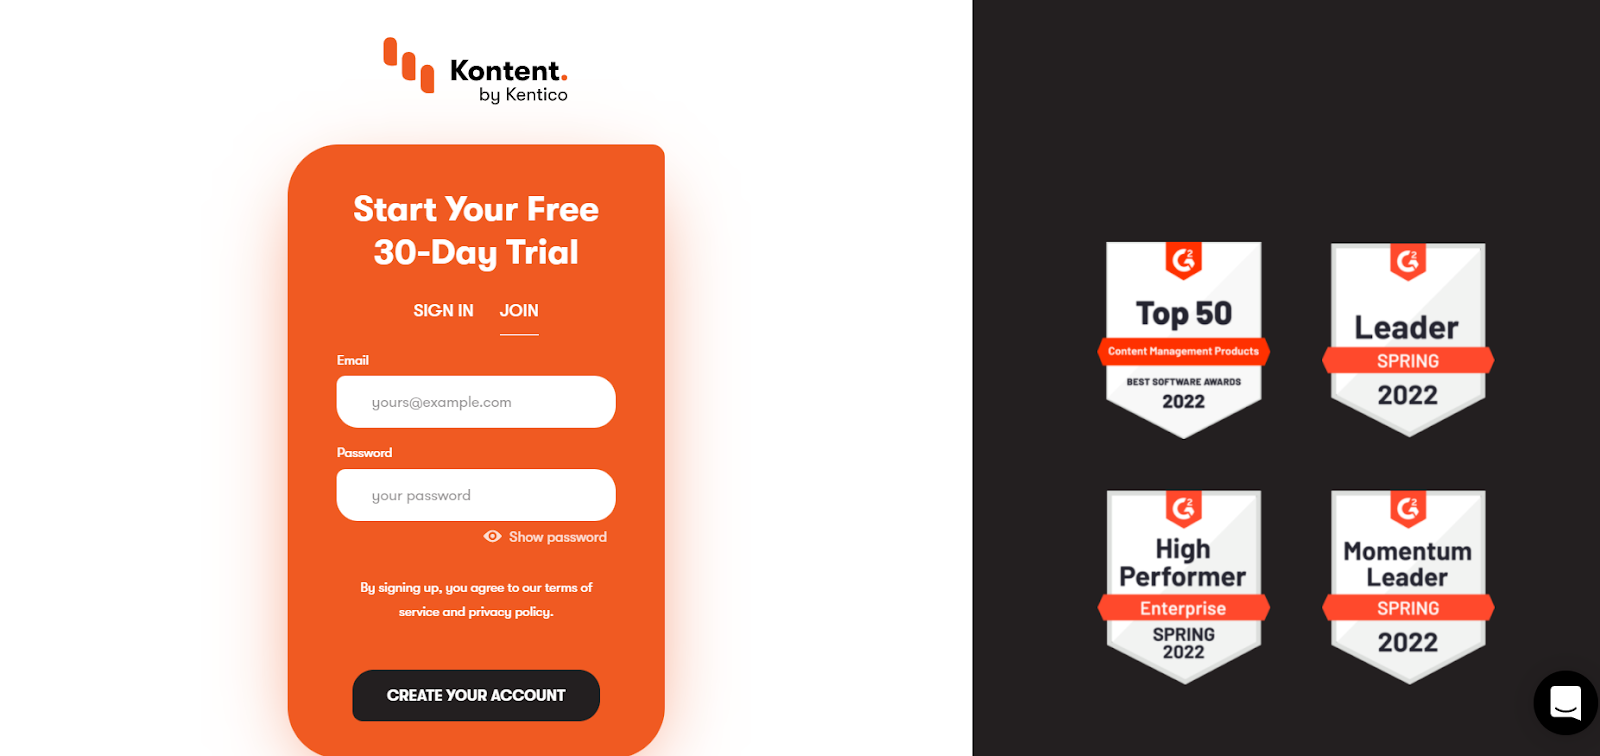 Form for Kontent headless platform trial for 30 days